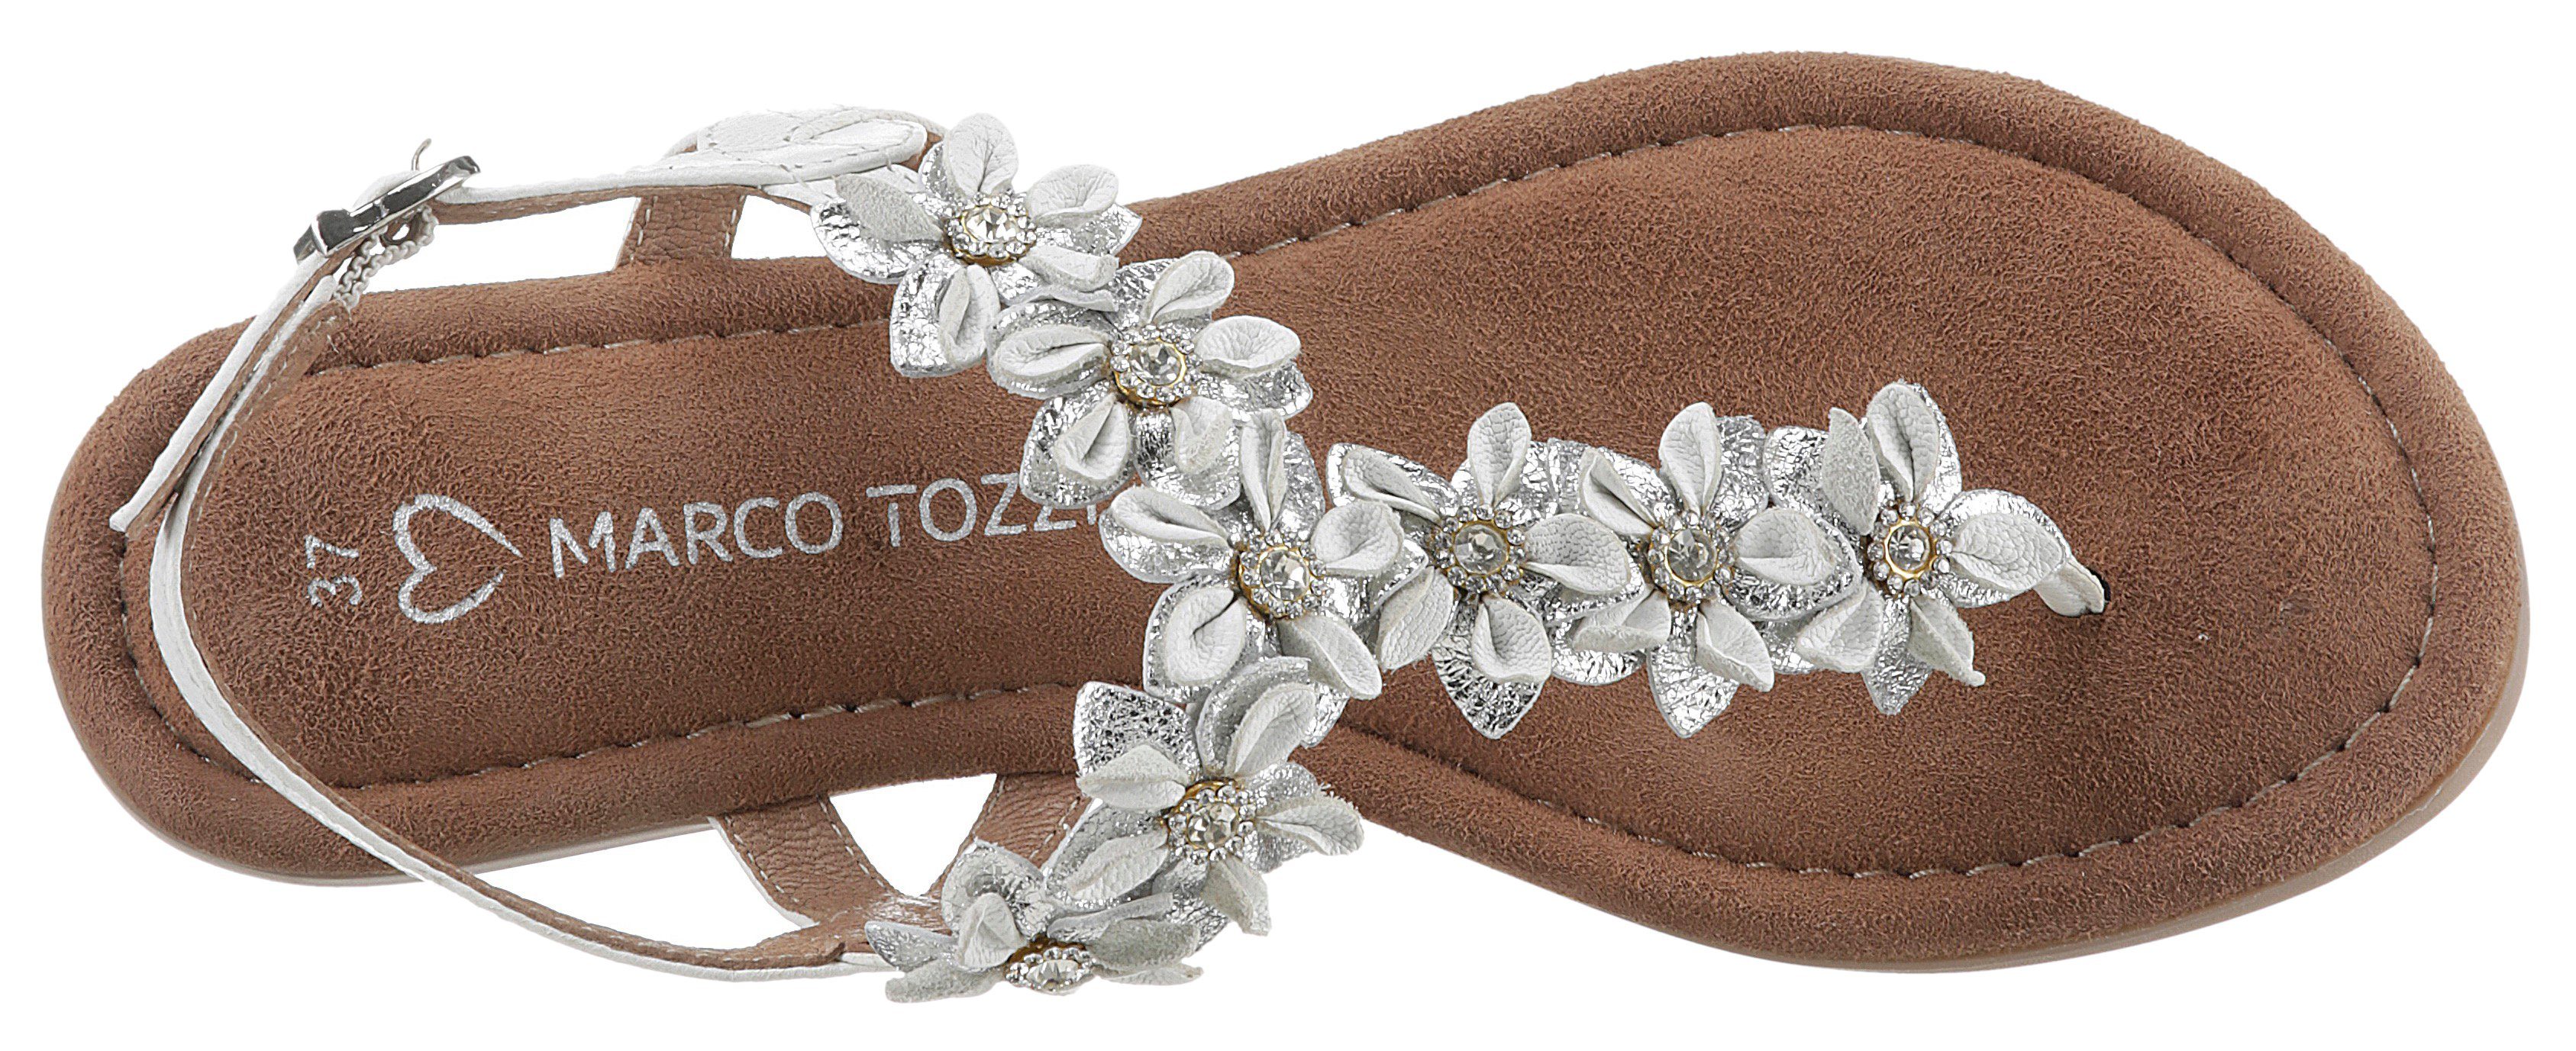 MARCO TOZZI Sandale mit Blütenverzierung weiß-silberfarben aufwendiger